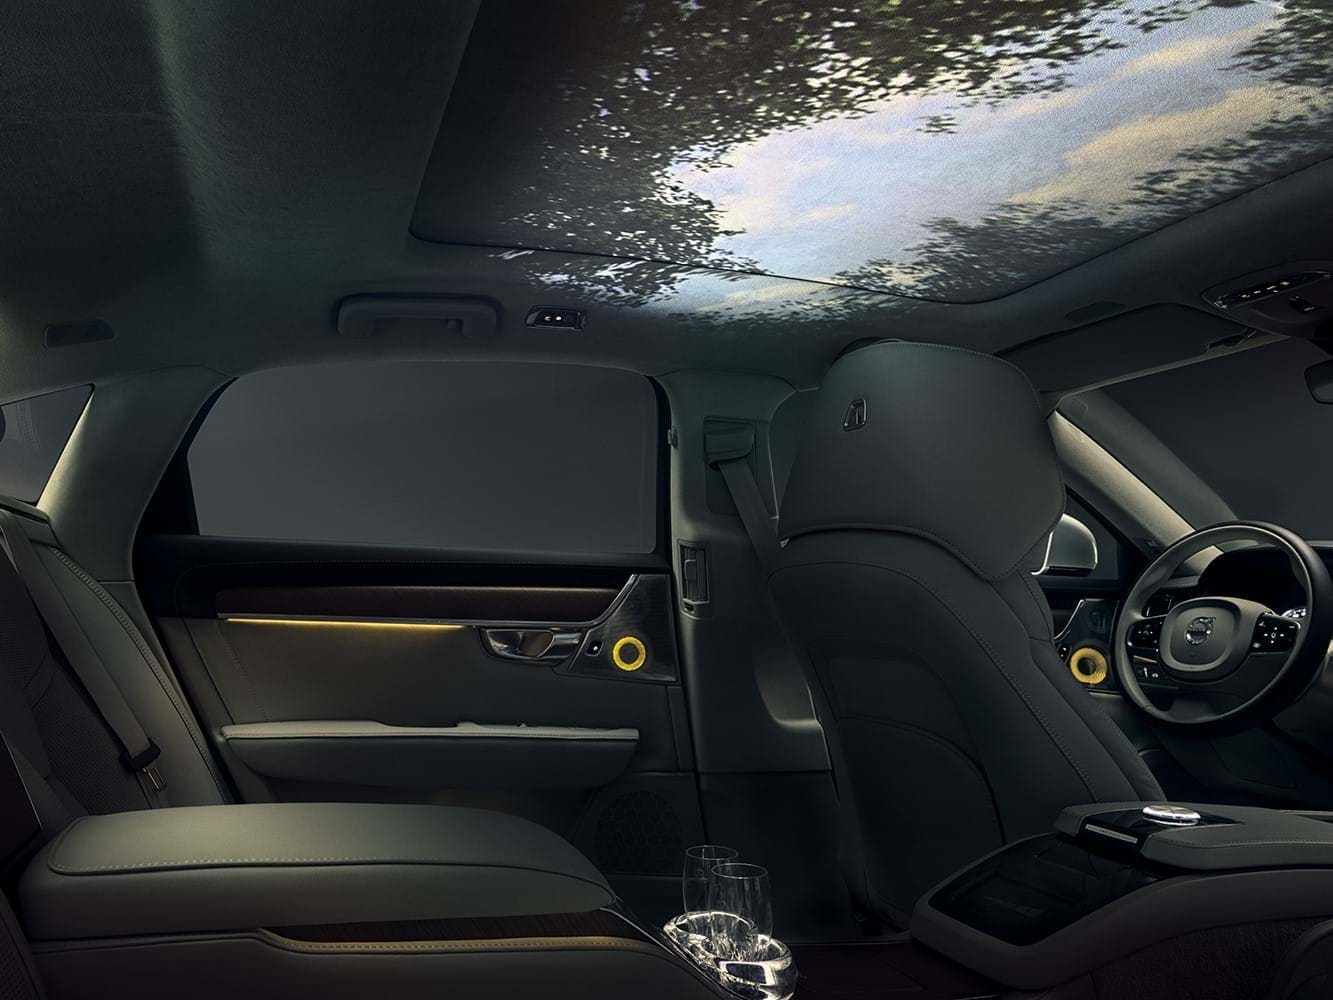 Interiorul conceptului nostru de experiență multi-senzorială în interiorul mașinii, cu o imagine panoramică a cerului de pădure pe tavanul mașinii